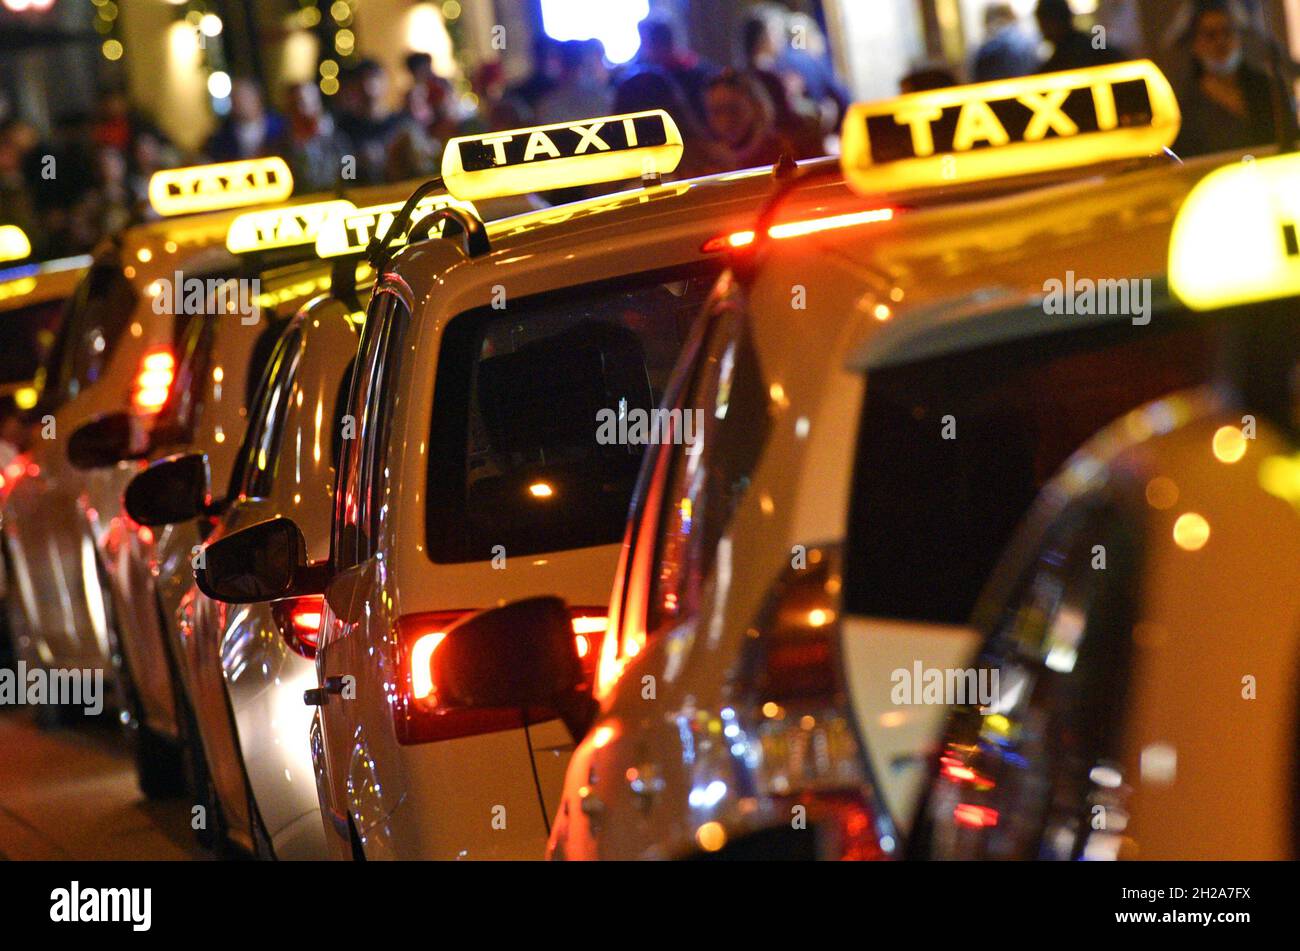 Gelbe Taxi-Schild Auf Taxi Auto Am Abend Oder In Der Nacht In Der  Stadtstraße Lizenzfreie Fotos, Bilder und Stock Fotografie. Image 60248308.